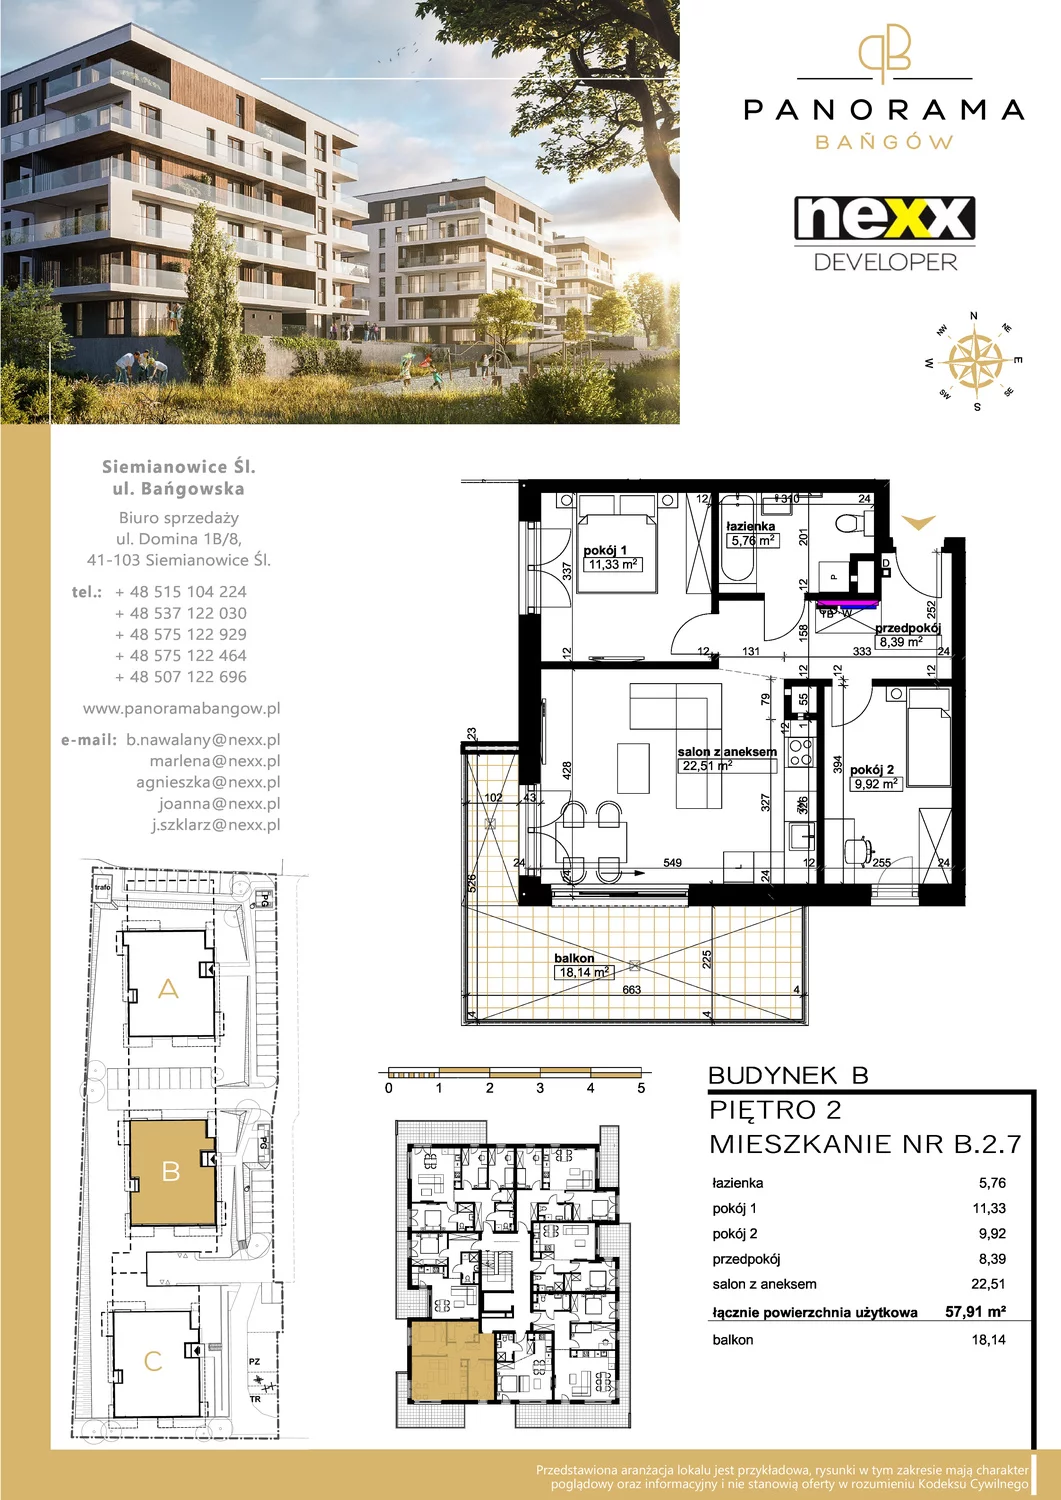 Mieszkanie 57,91 m², piętro 2, oferta nr B 2.7, Panorama Bańgów, Siemianowice Śląskie, Bańgów, ul. Bańgowska